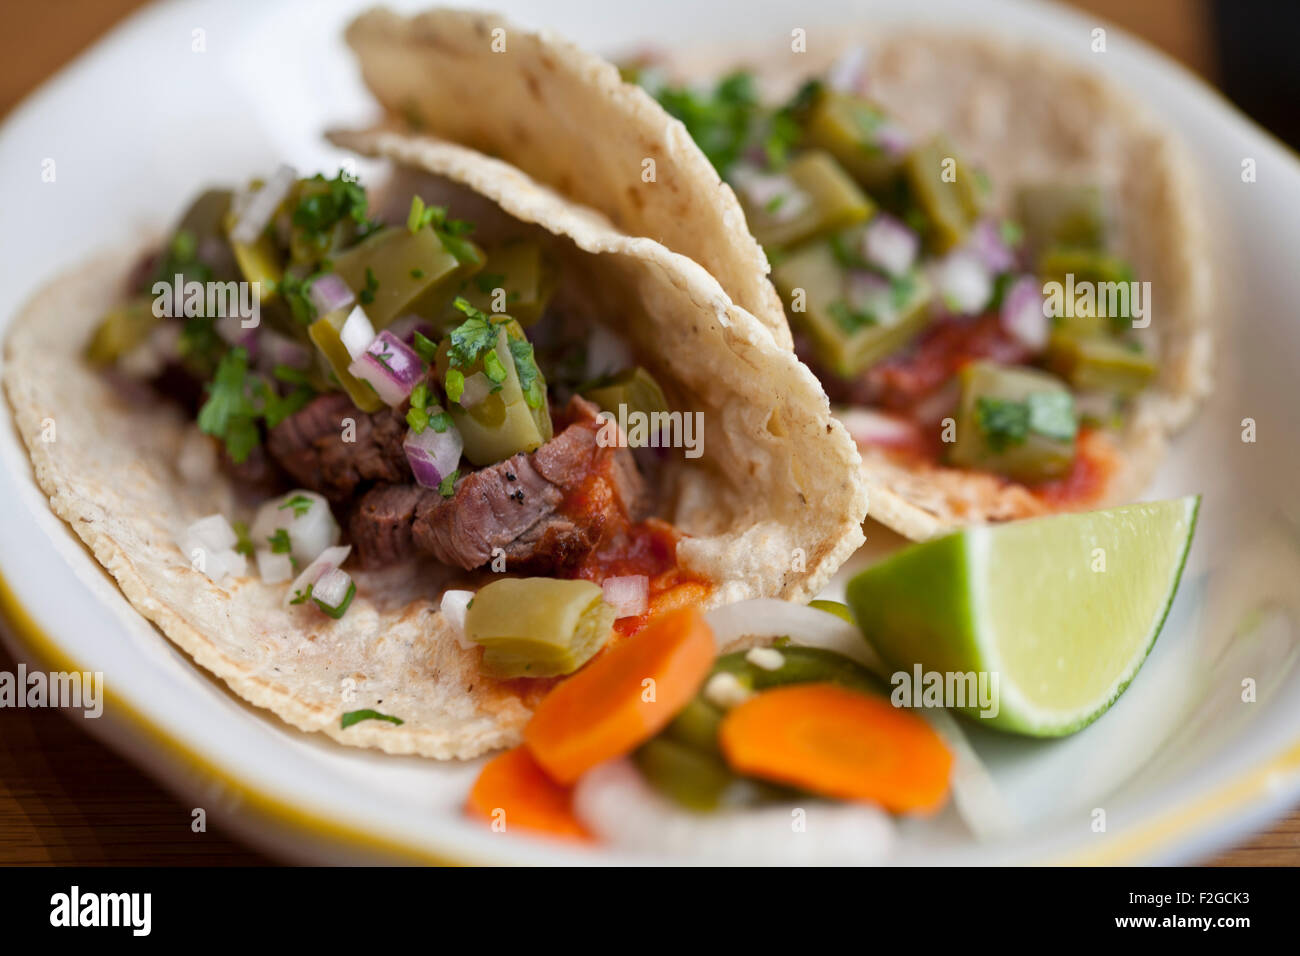 zwei Carne Asada Tacos mit Nopales, Chipotle und Salsa auf einem weißen Teller mit Kalk und eingelegtes Gemüse Stockfoto